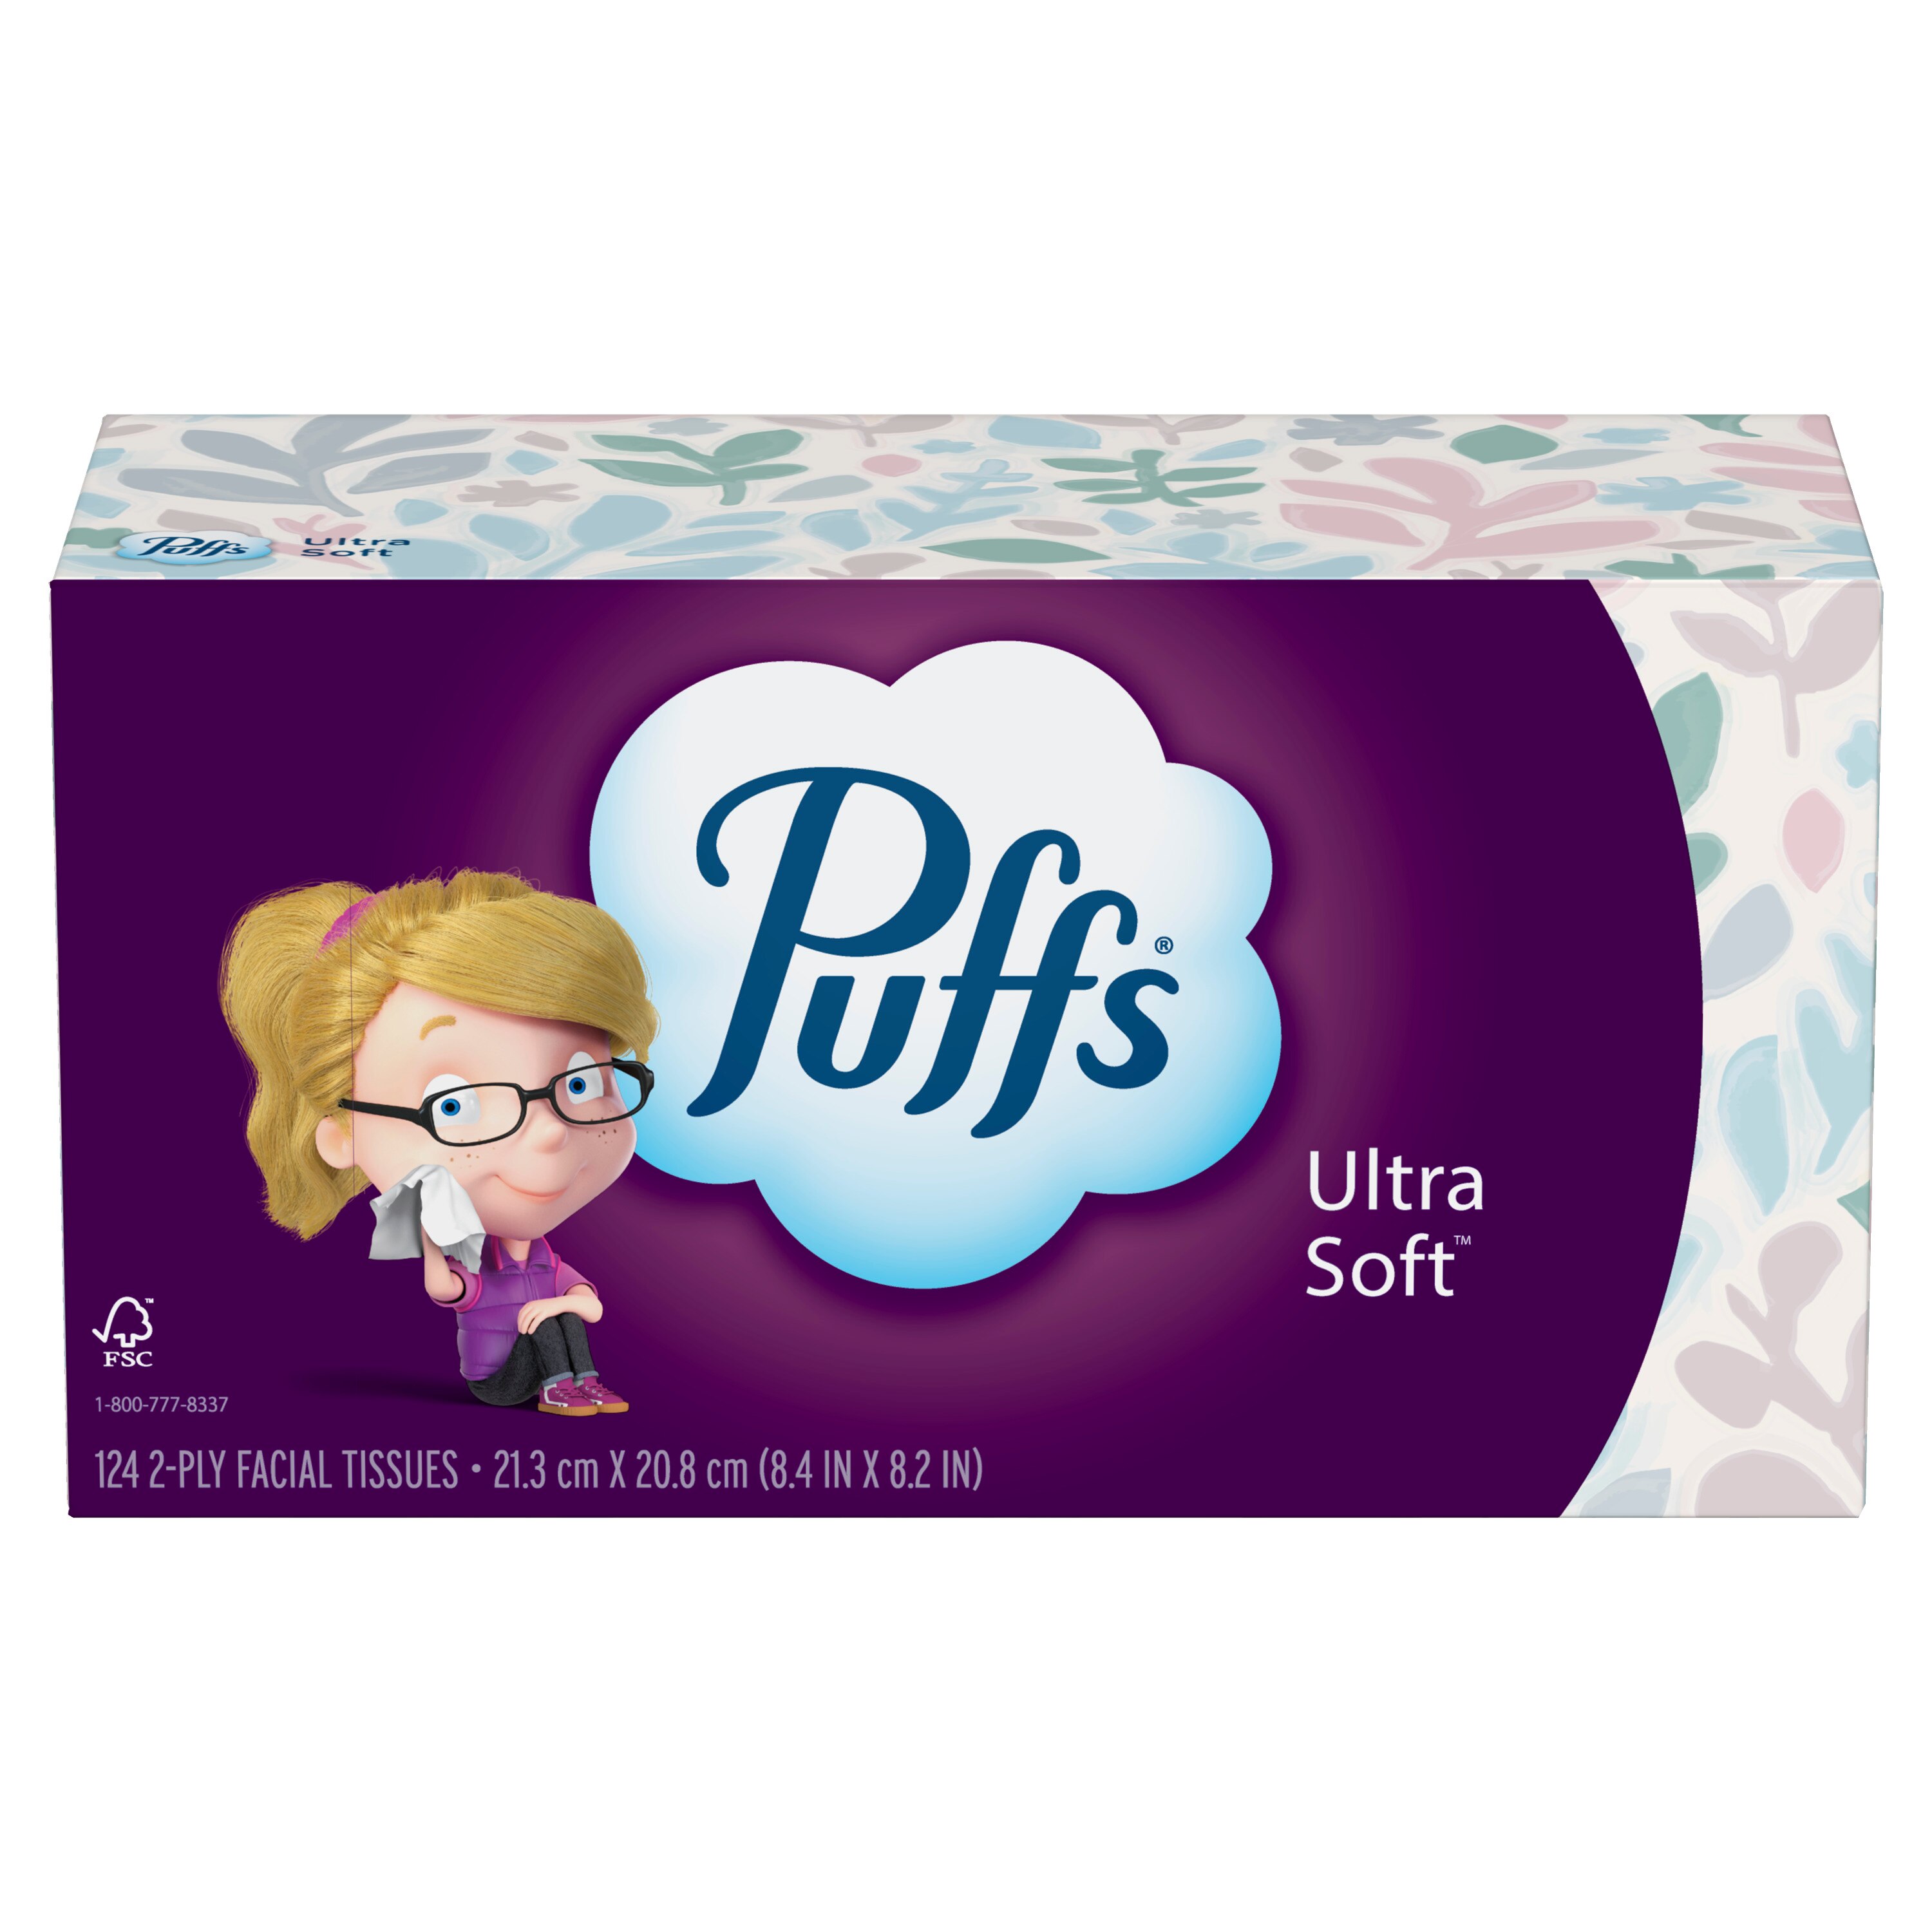 Puffs Ultra Soft Facial Tissues, 1 Family Size Box, 124 Facial Tissues Per Box